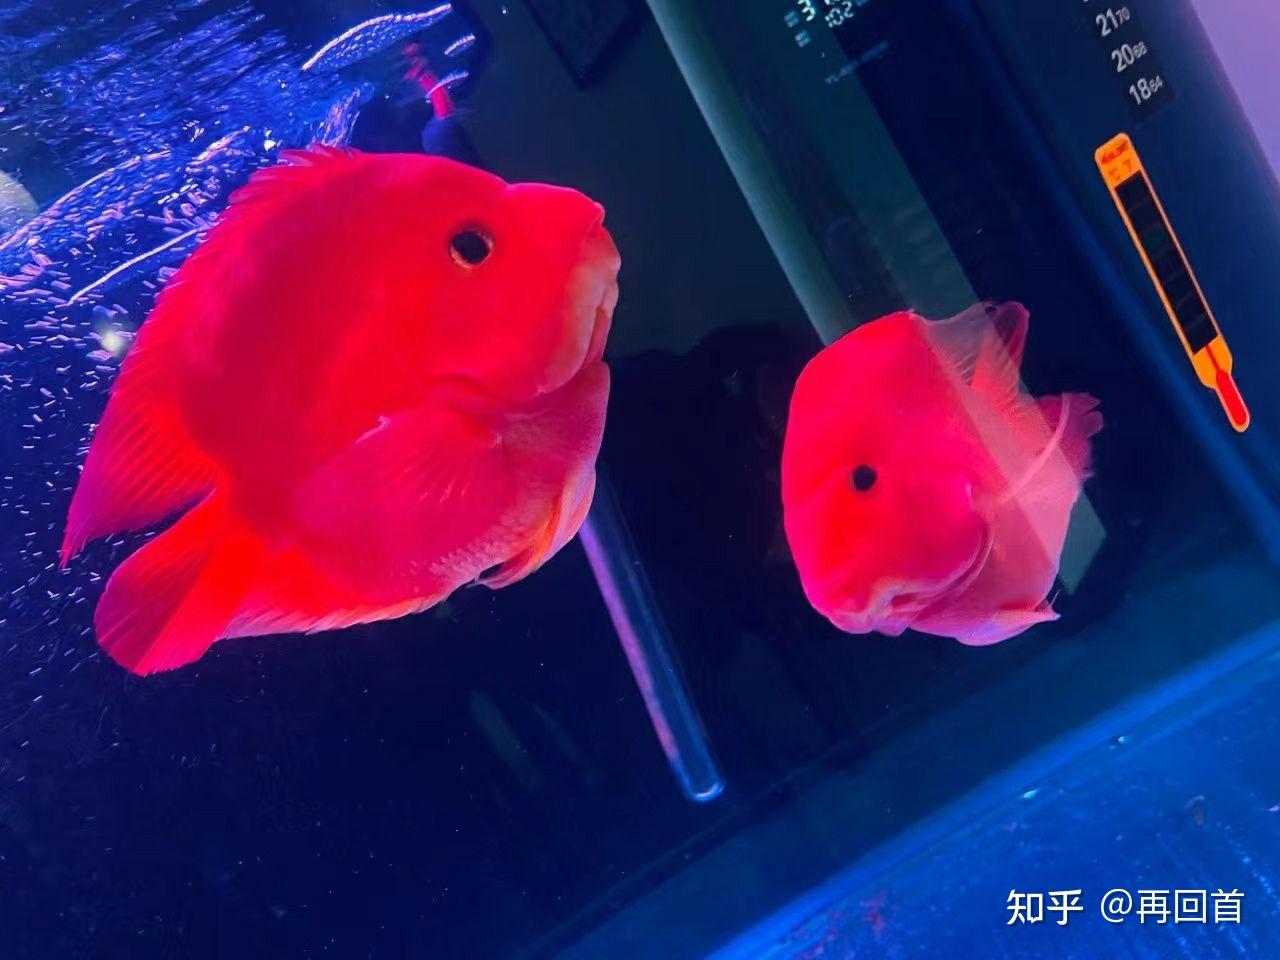 橘斑鹦哥鱼图片欣赏-海友网